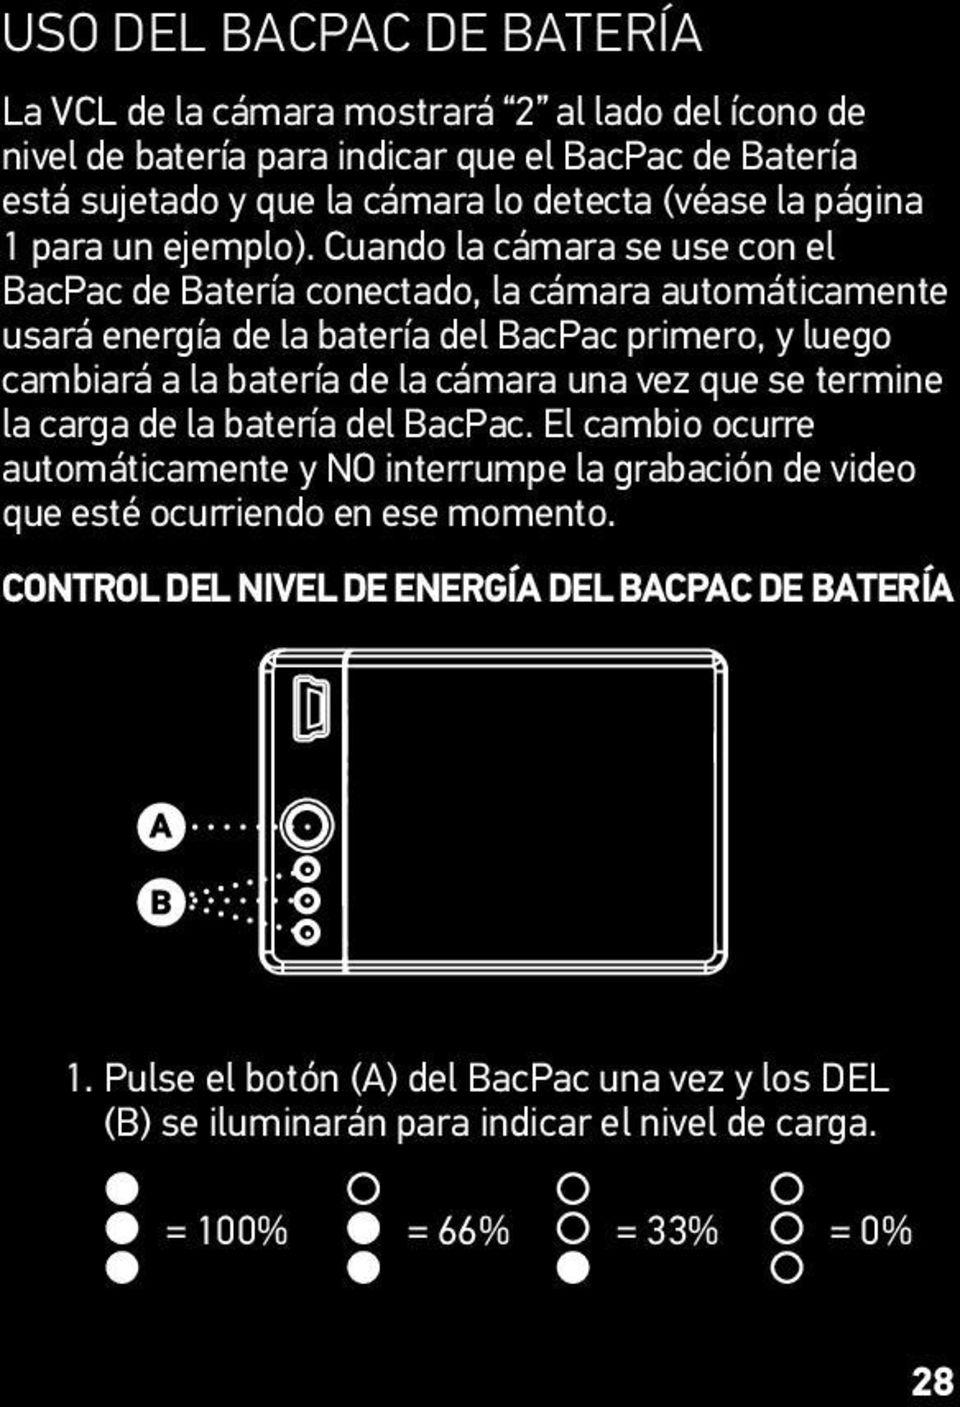 Cuando la cámara se use con el BacPac de Batería conectado, la cámara automáticamente usará energía de la batería del BacPac primero, y luego cambiará a la batería de la cámara una